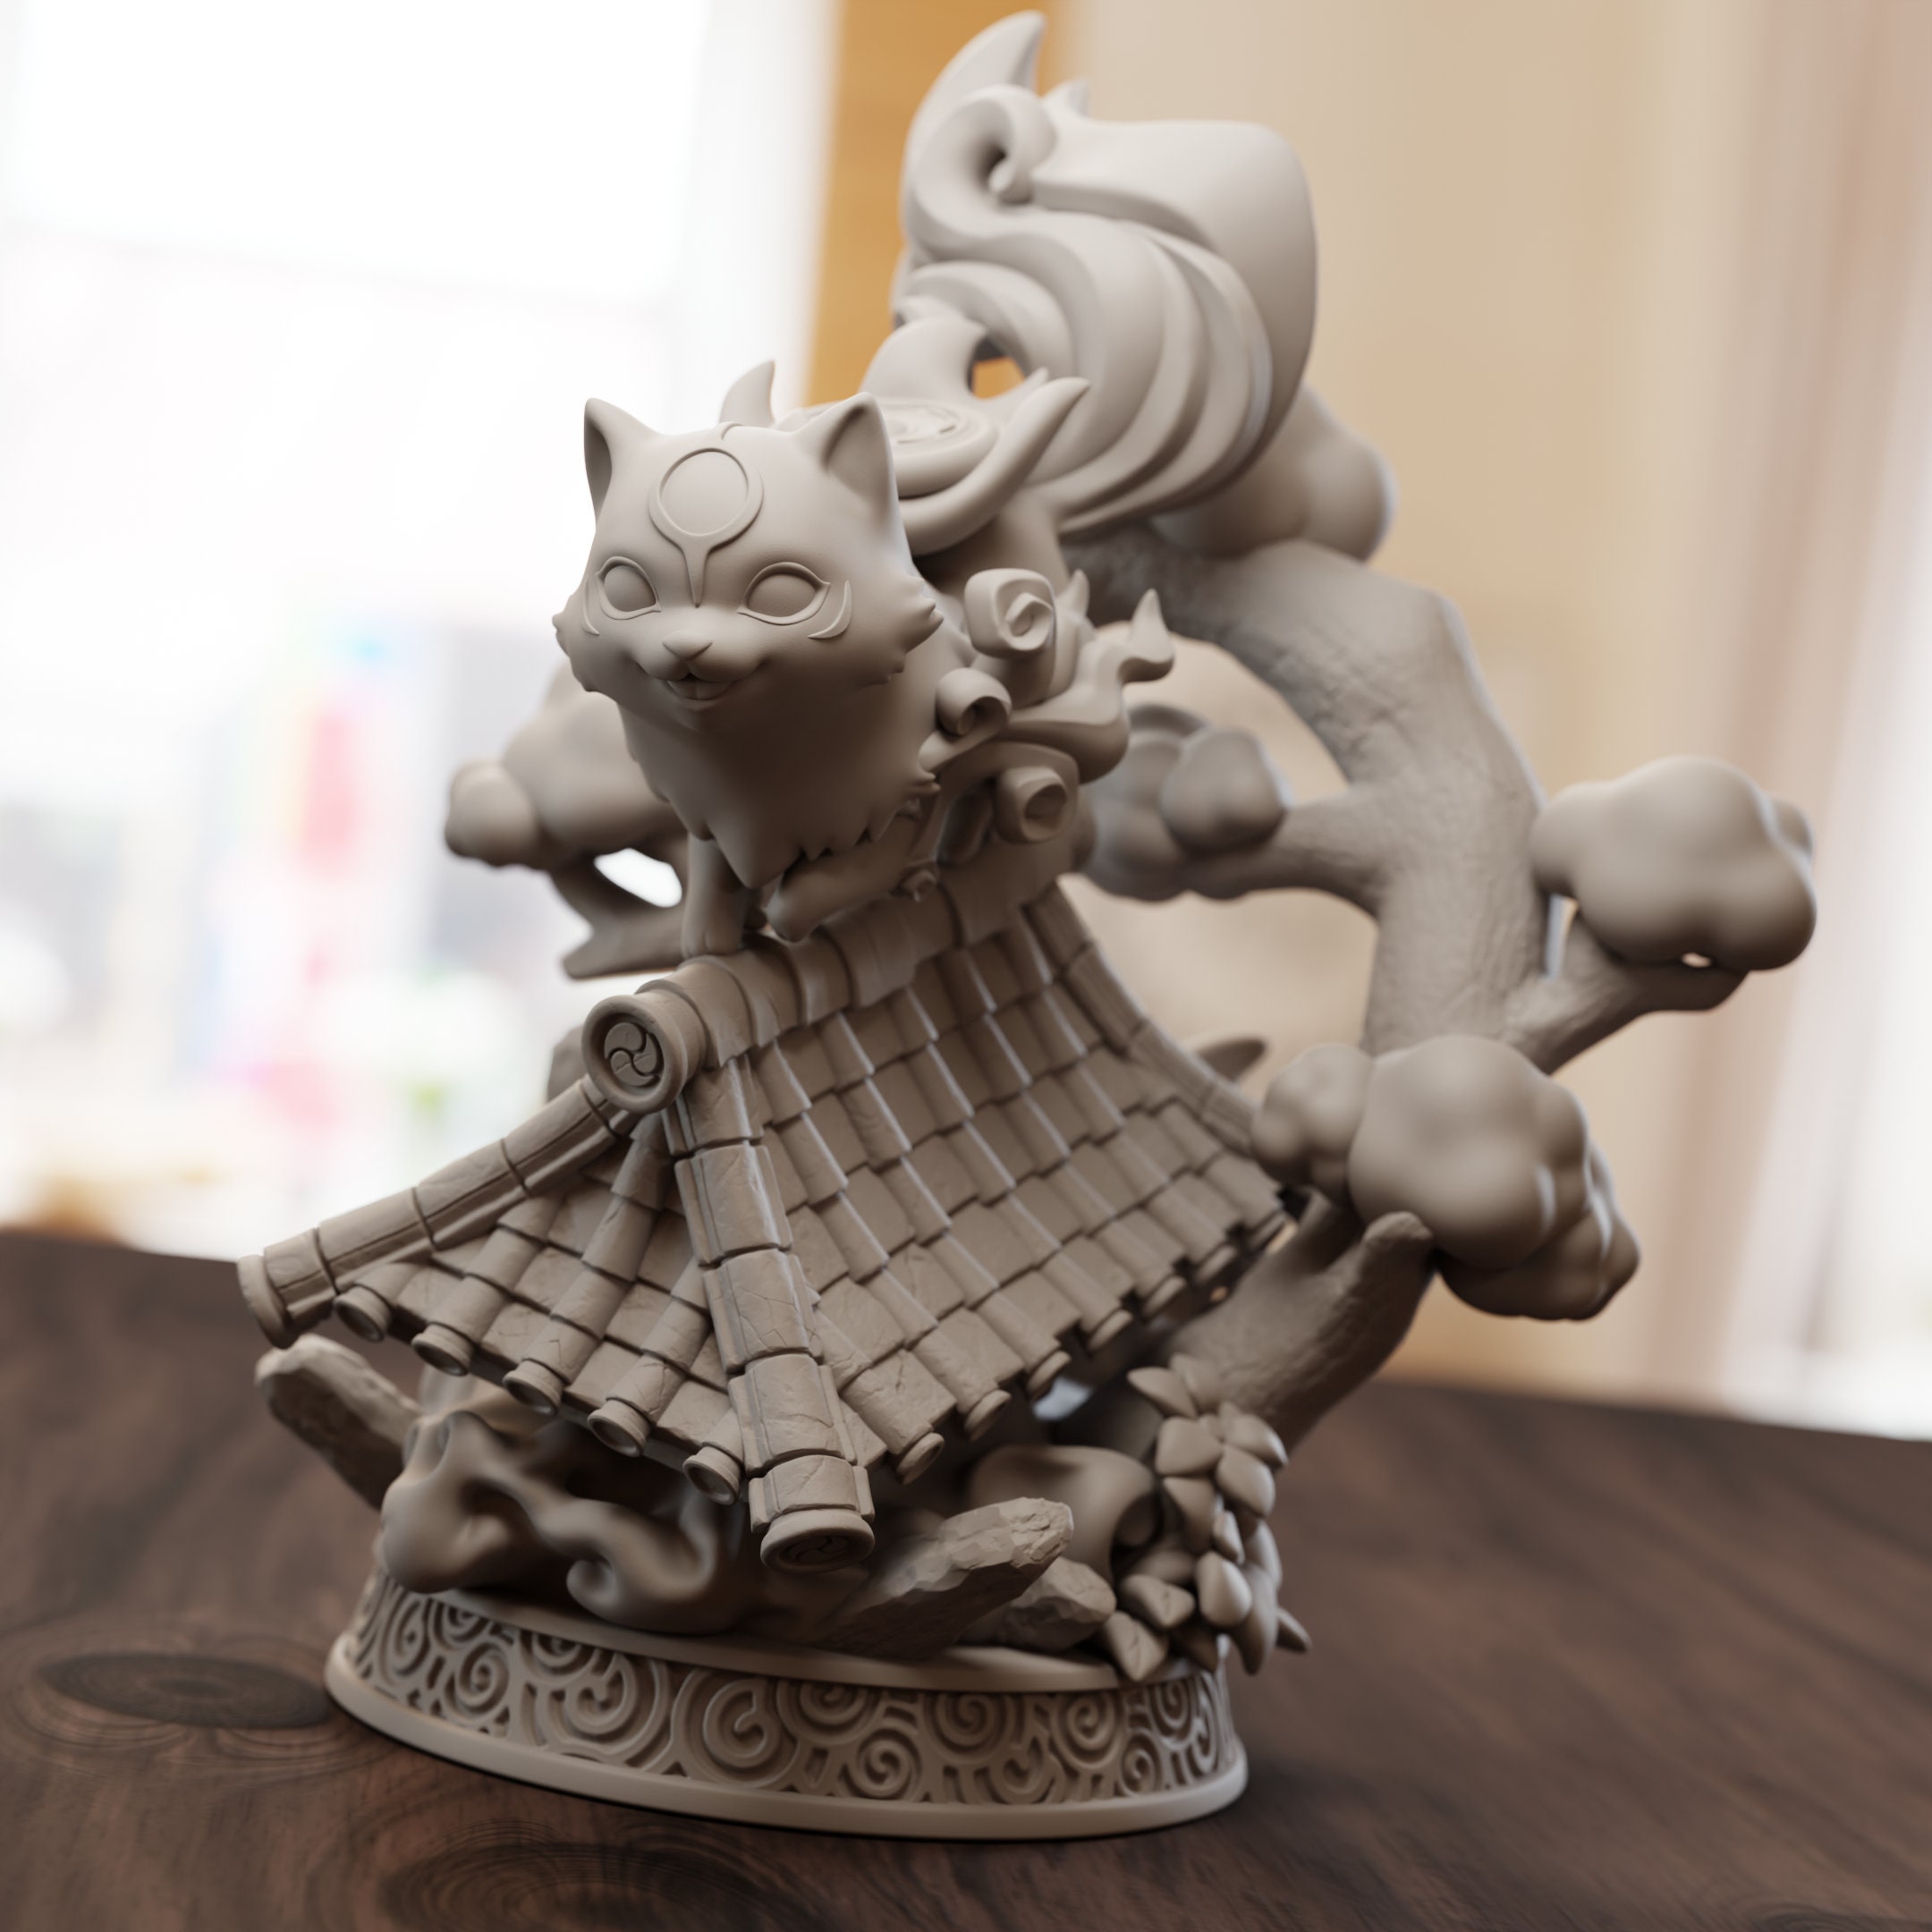 Chibi Amaterasu - Okami 3D model 3D printable